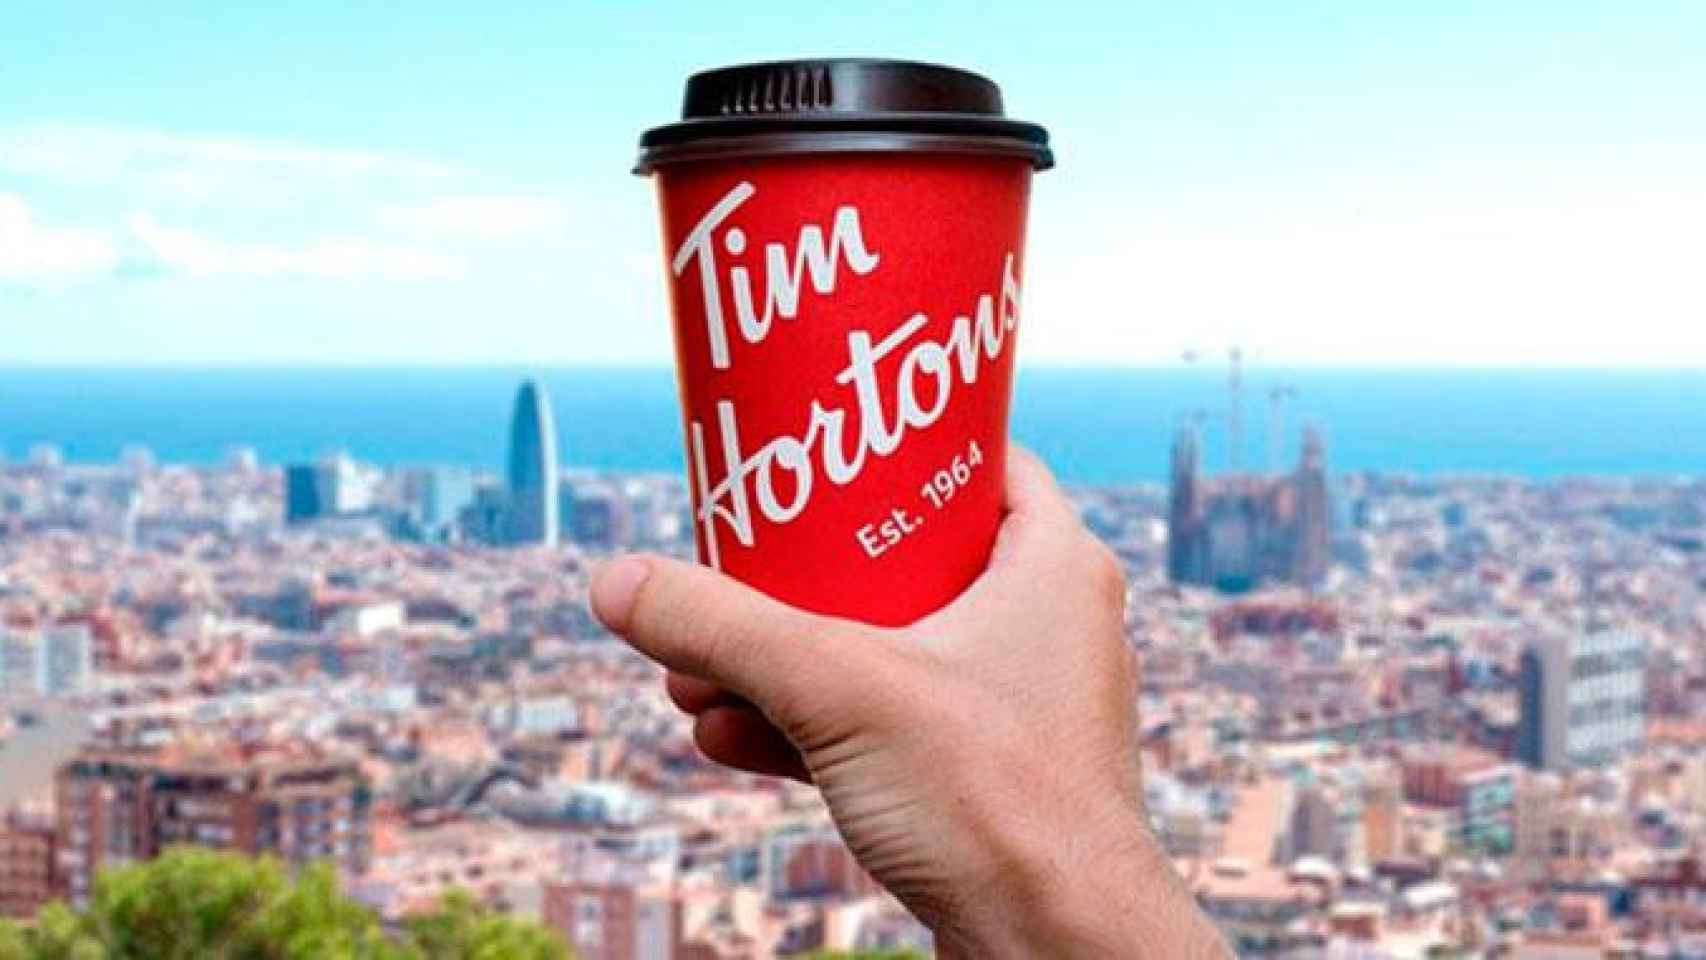 Imagen promocional de Tim Hortons, que abrirá una cafetería en Barcelona / TIM HORTONS